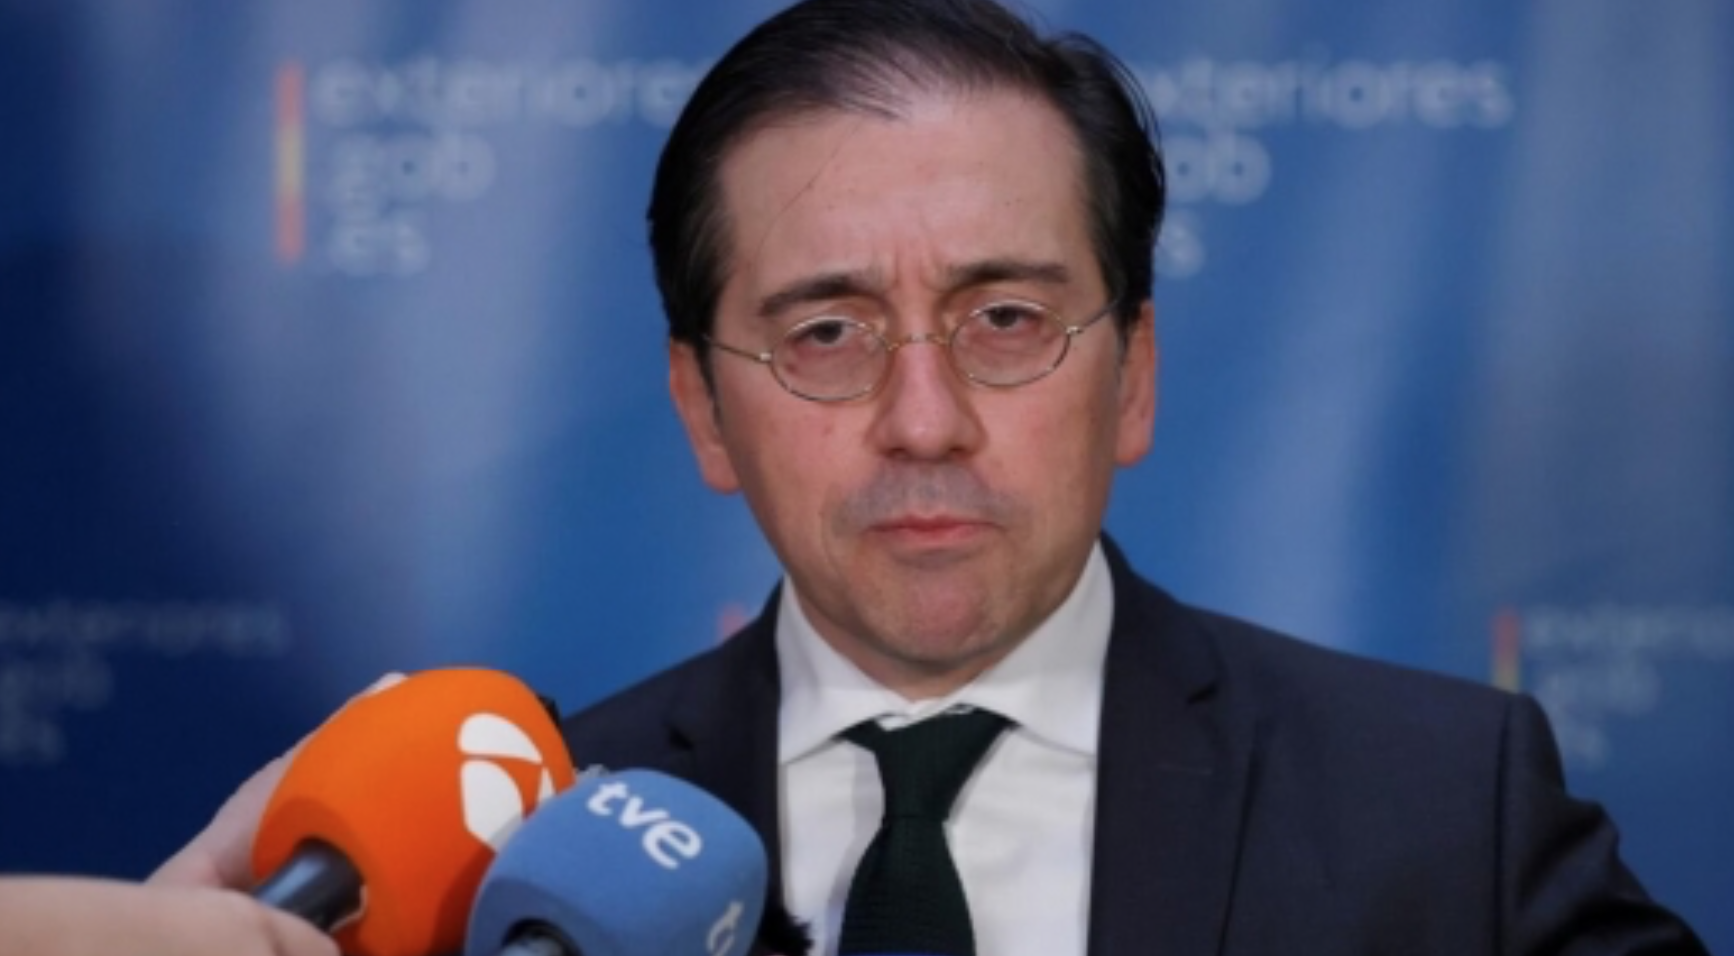 Rapatriement des Marocains via le Portugal : l'Espagne convoque le chargé d'affaires de l'ambassade du Maroc à Madrid